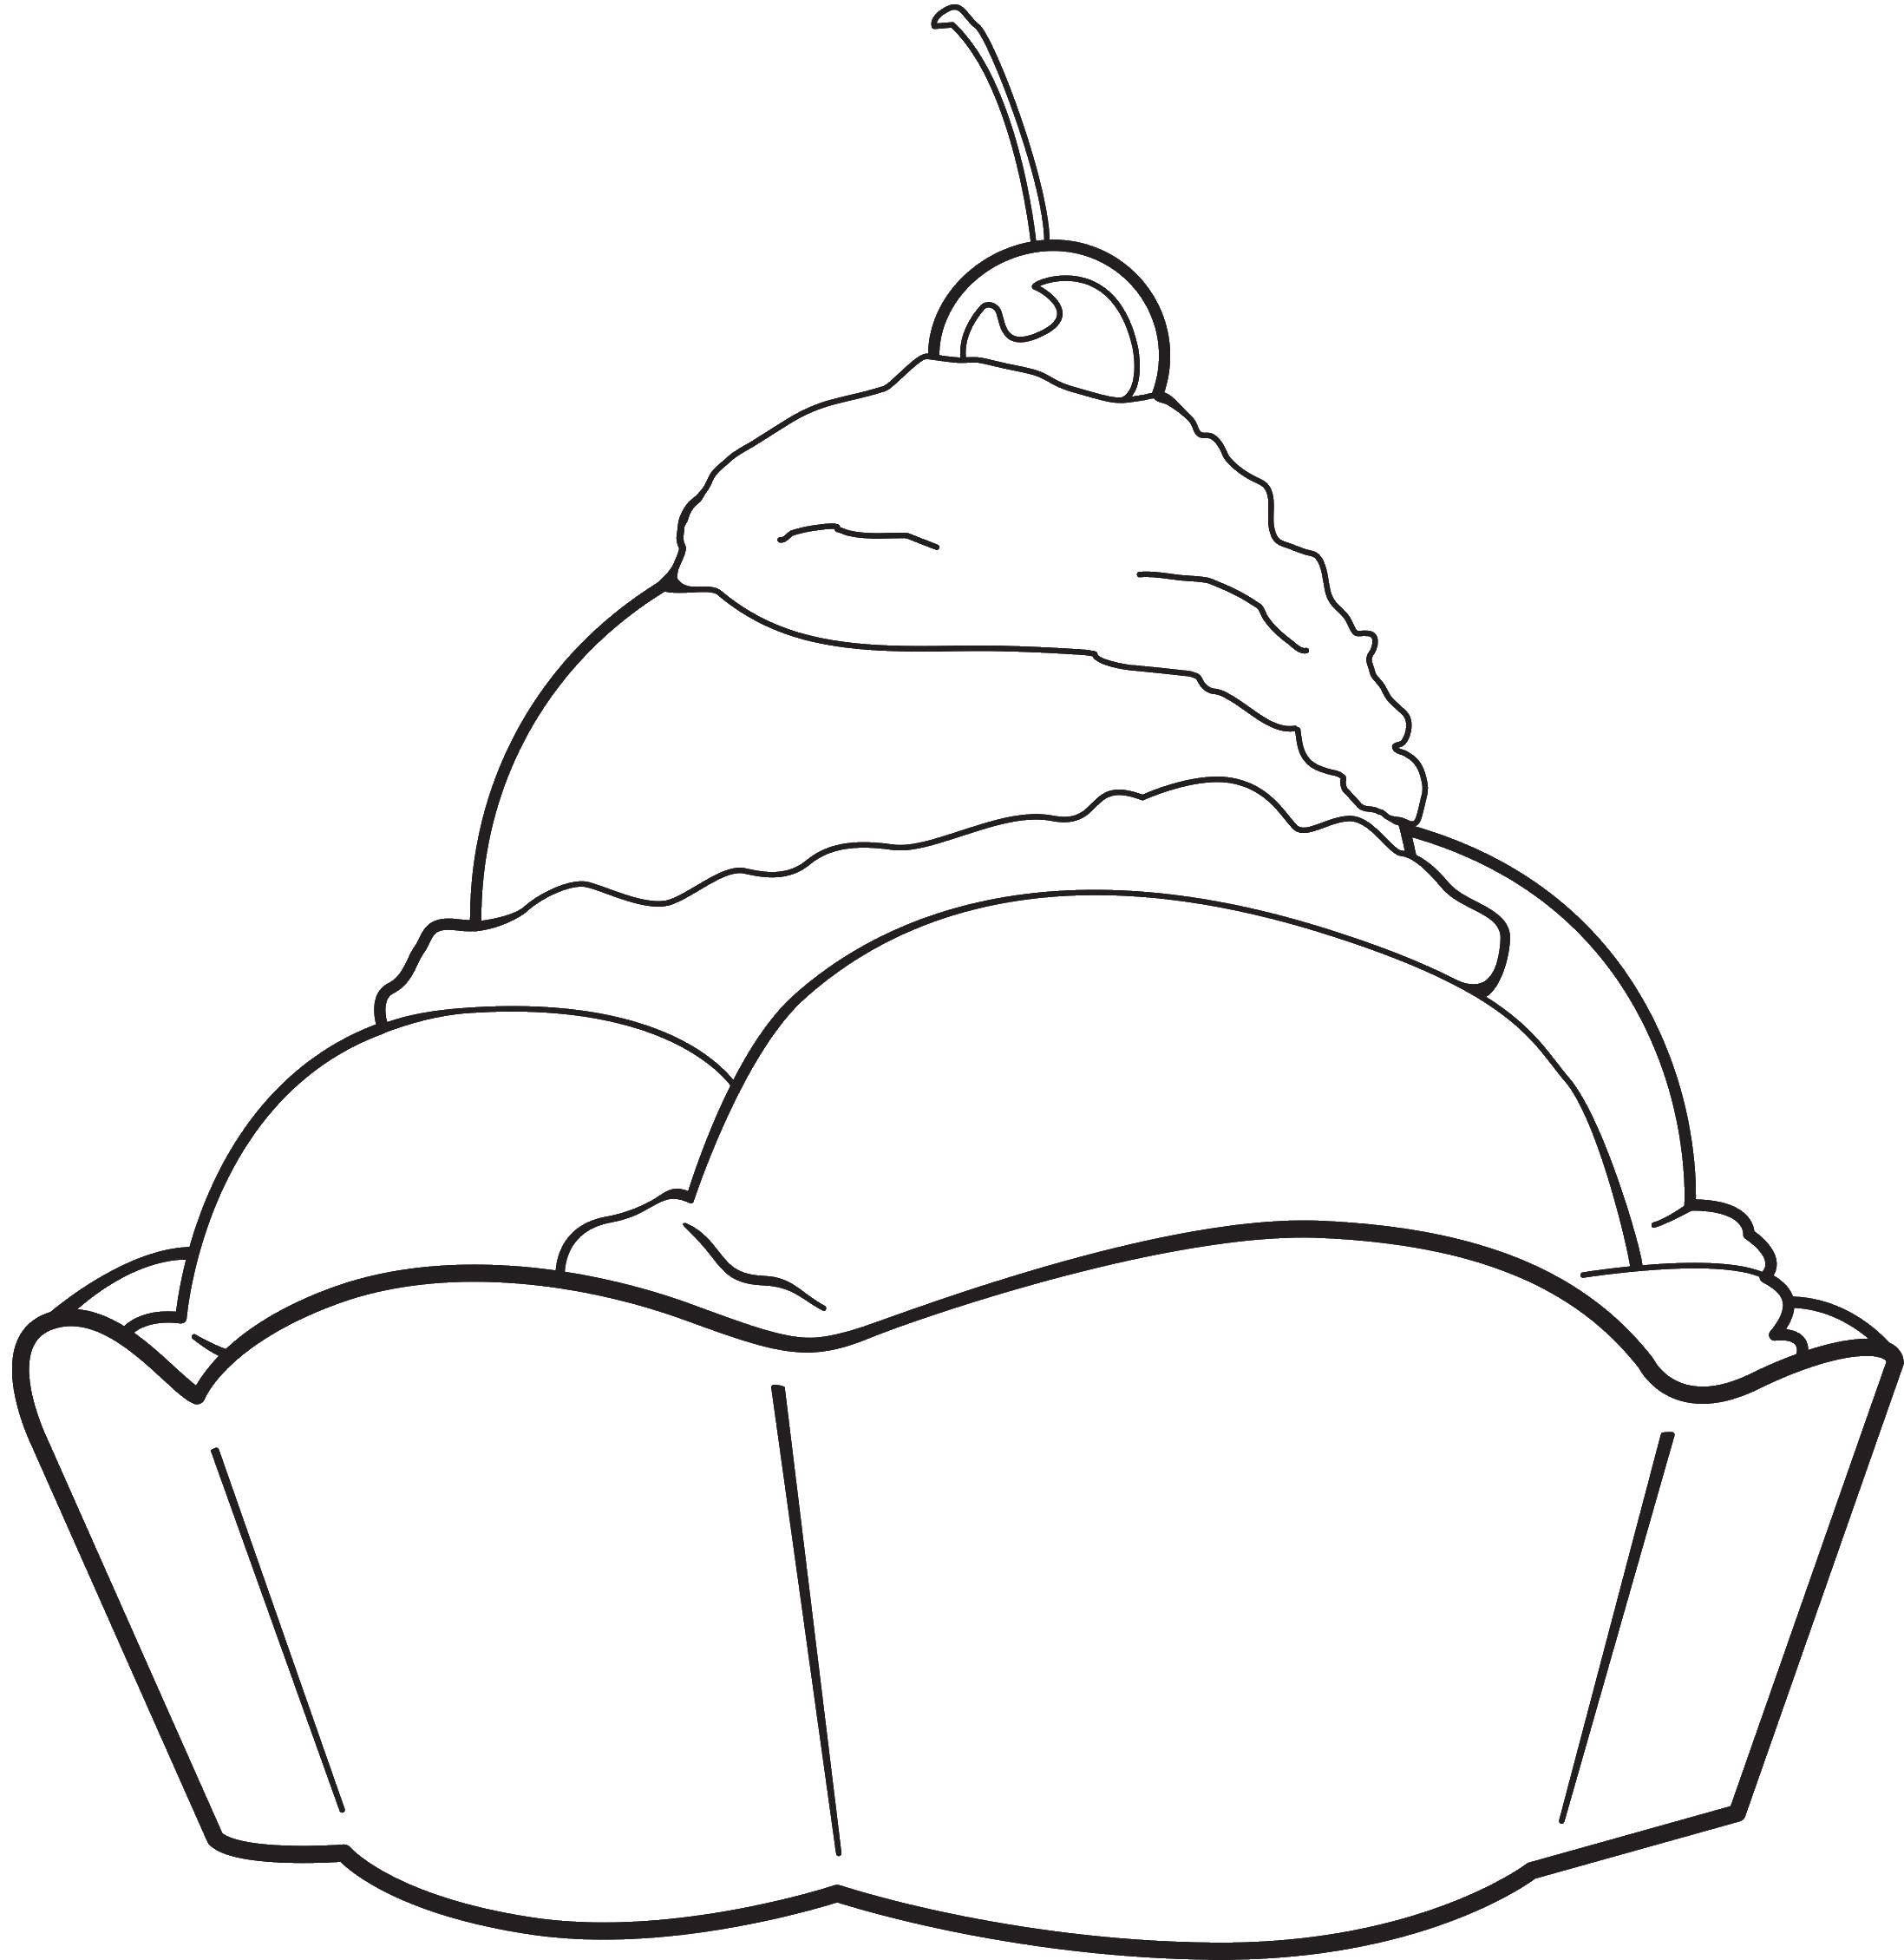 Название: Раскраска Тарелка с мороженым с вишенькой. Категория: мороженое. Теги: мороженое, шариковое мороженое.